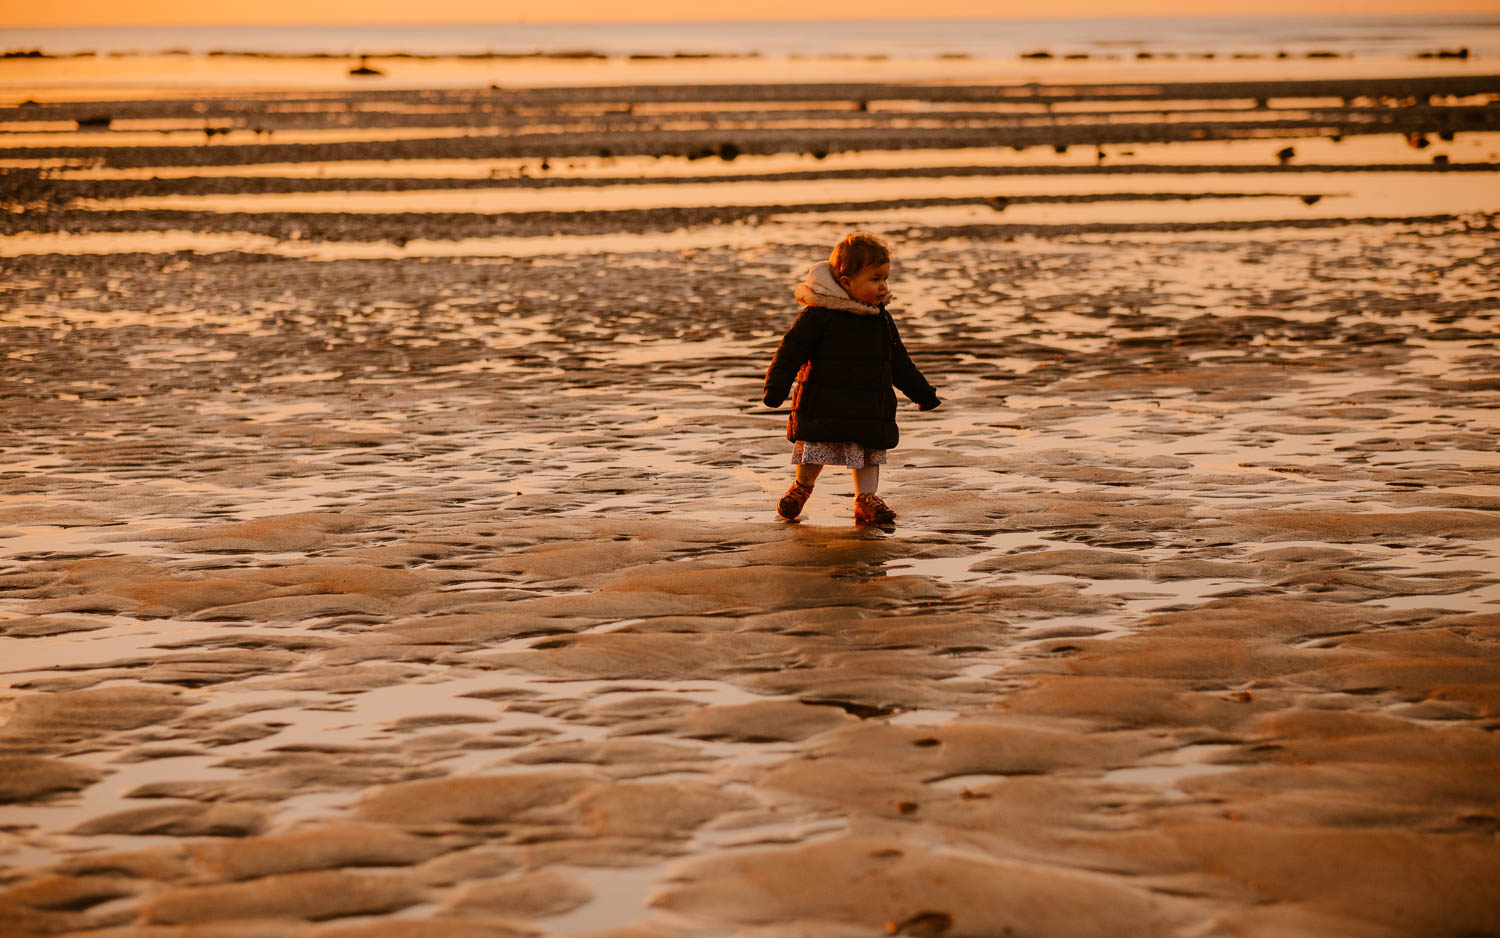 Séance photo lifestyle de famille parents enfant en extérieur, sur la plage, côte atlantique du pays de Retz par Geoffrey Arnoldy photographe